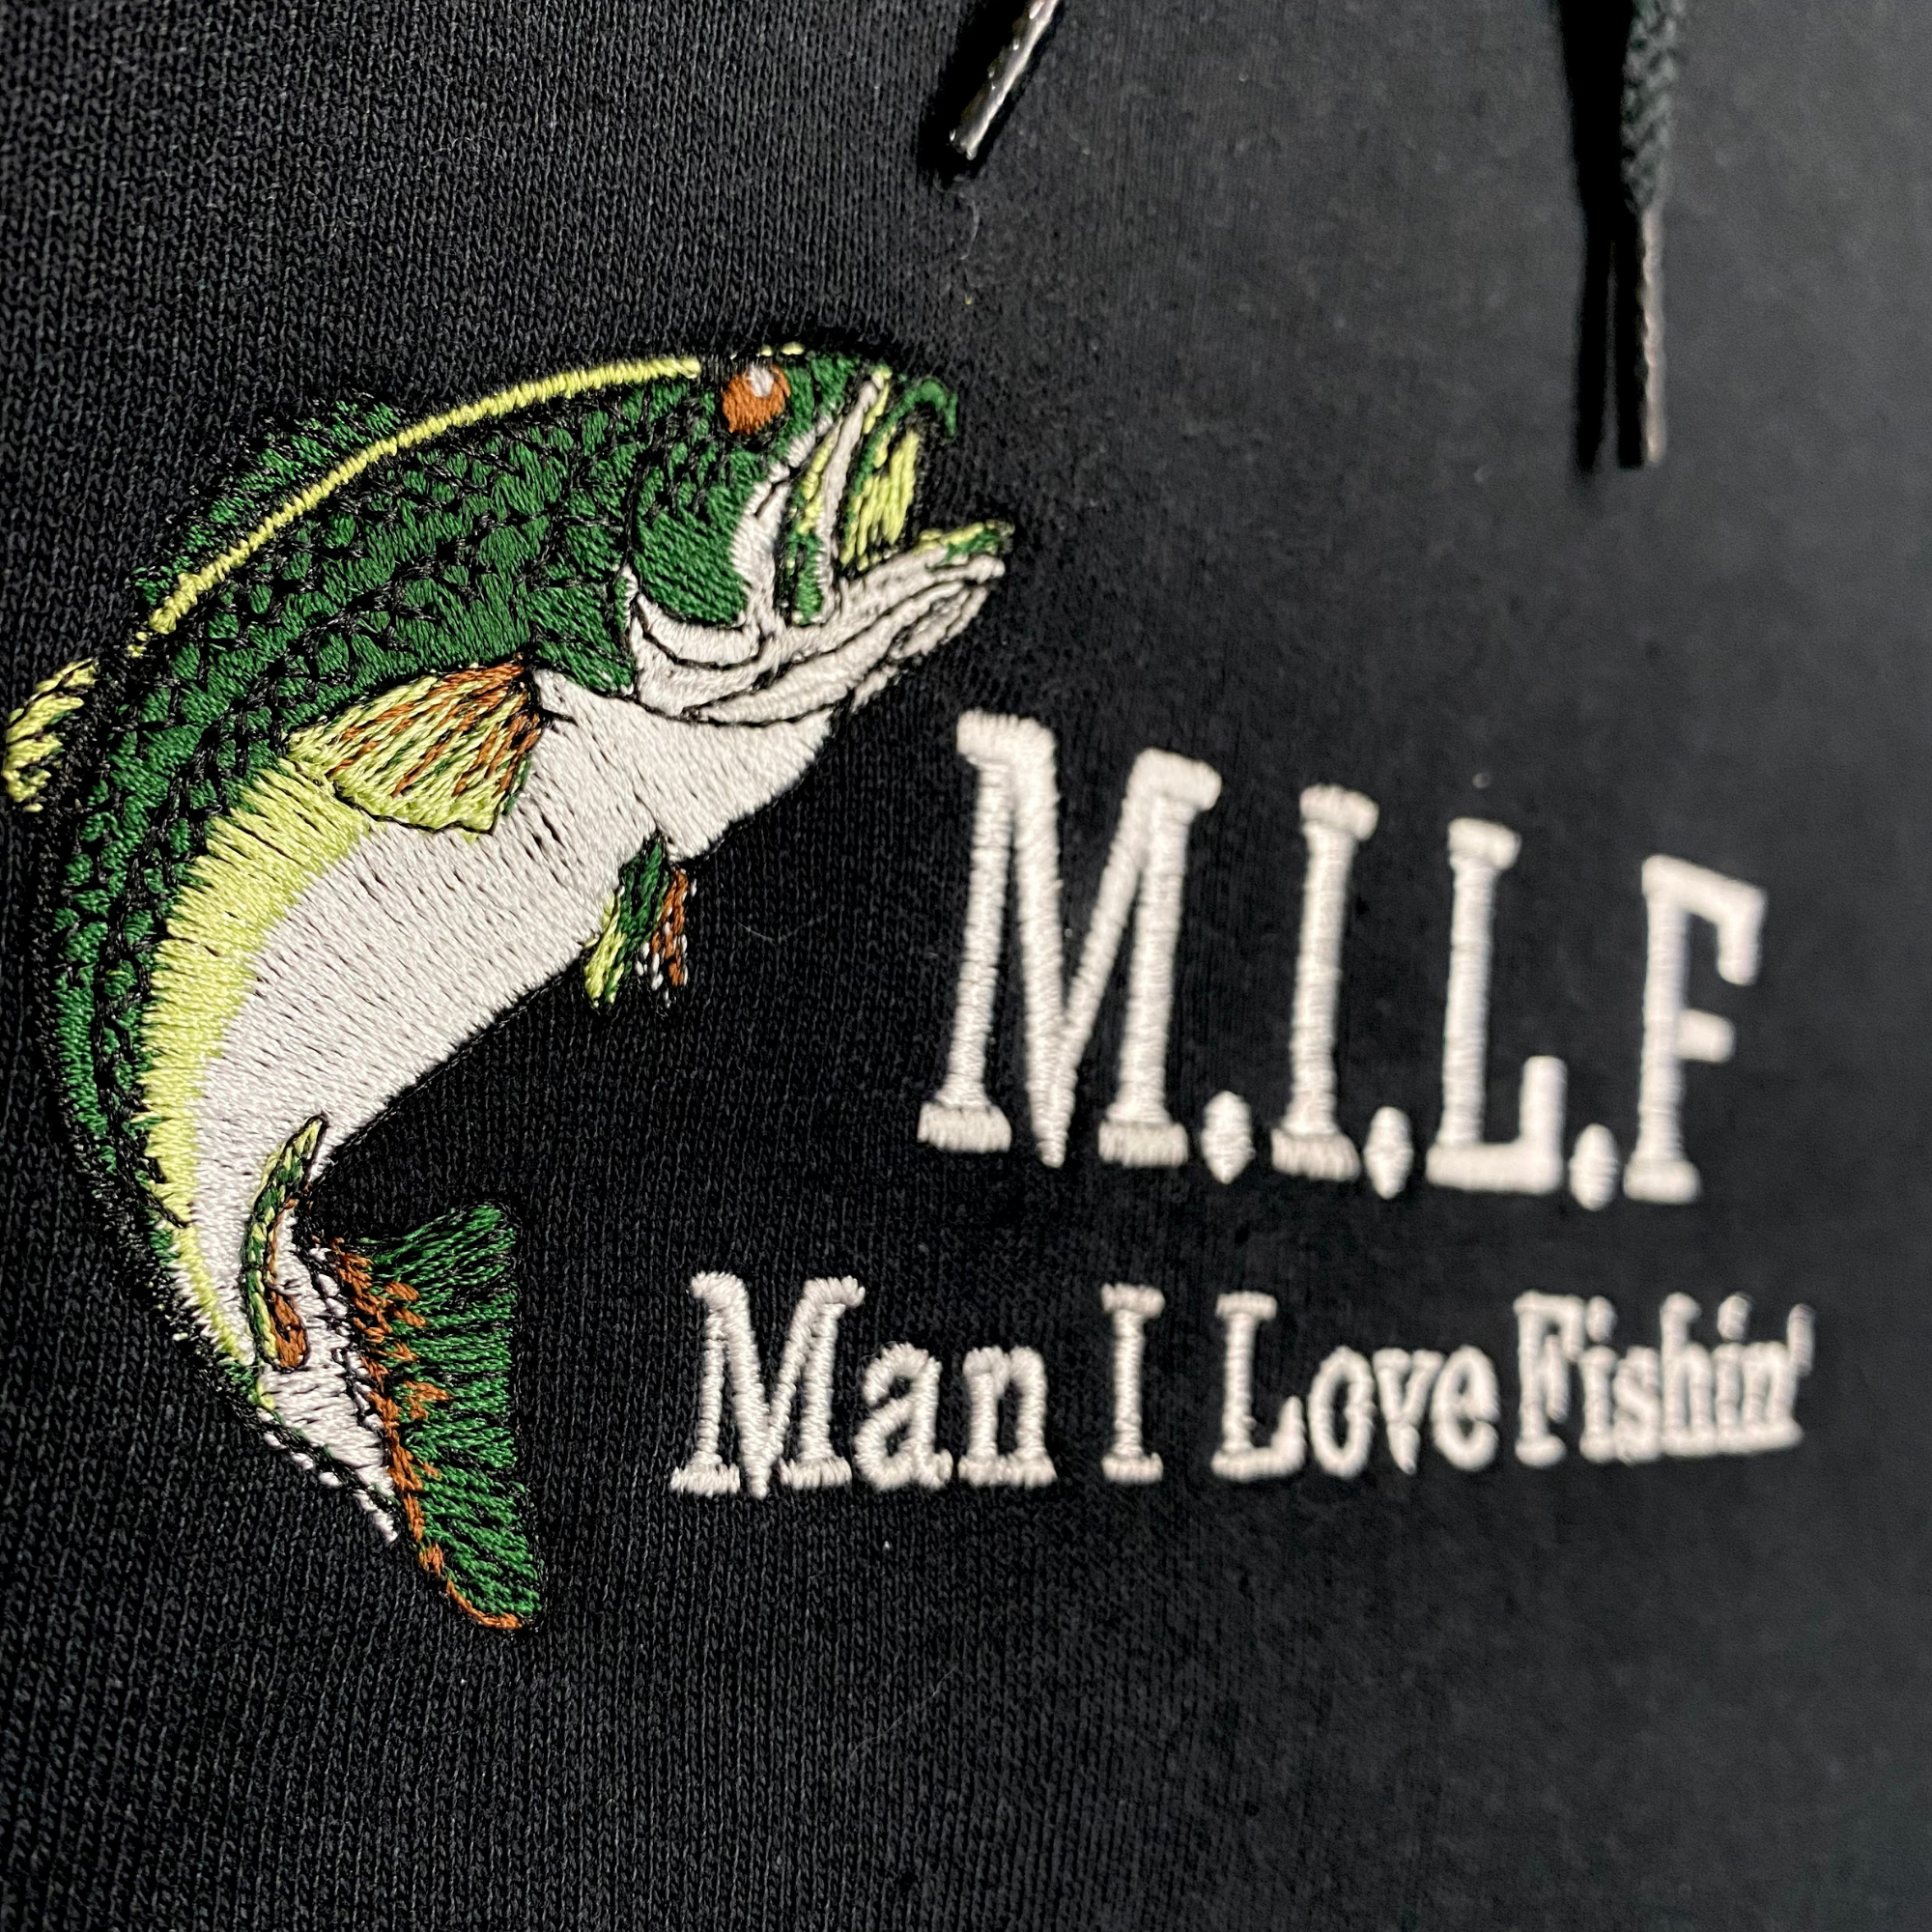 Man I Love Fishin' MILF Embroidered Black Hoodie Unisex